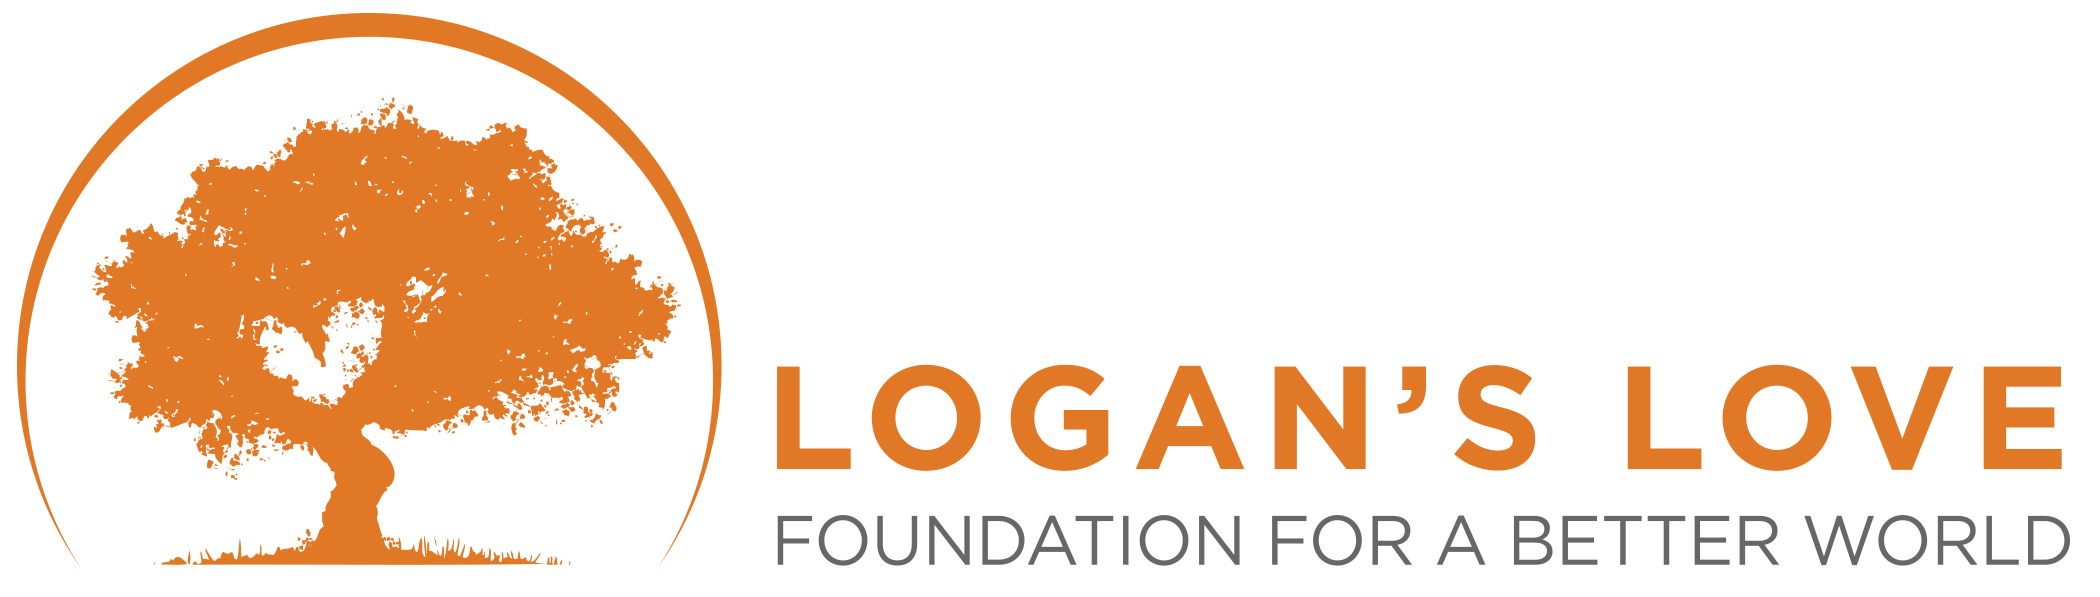 Logans Love